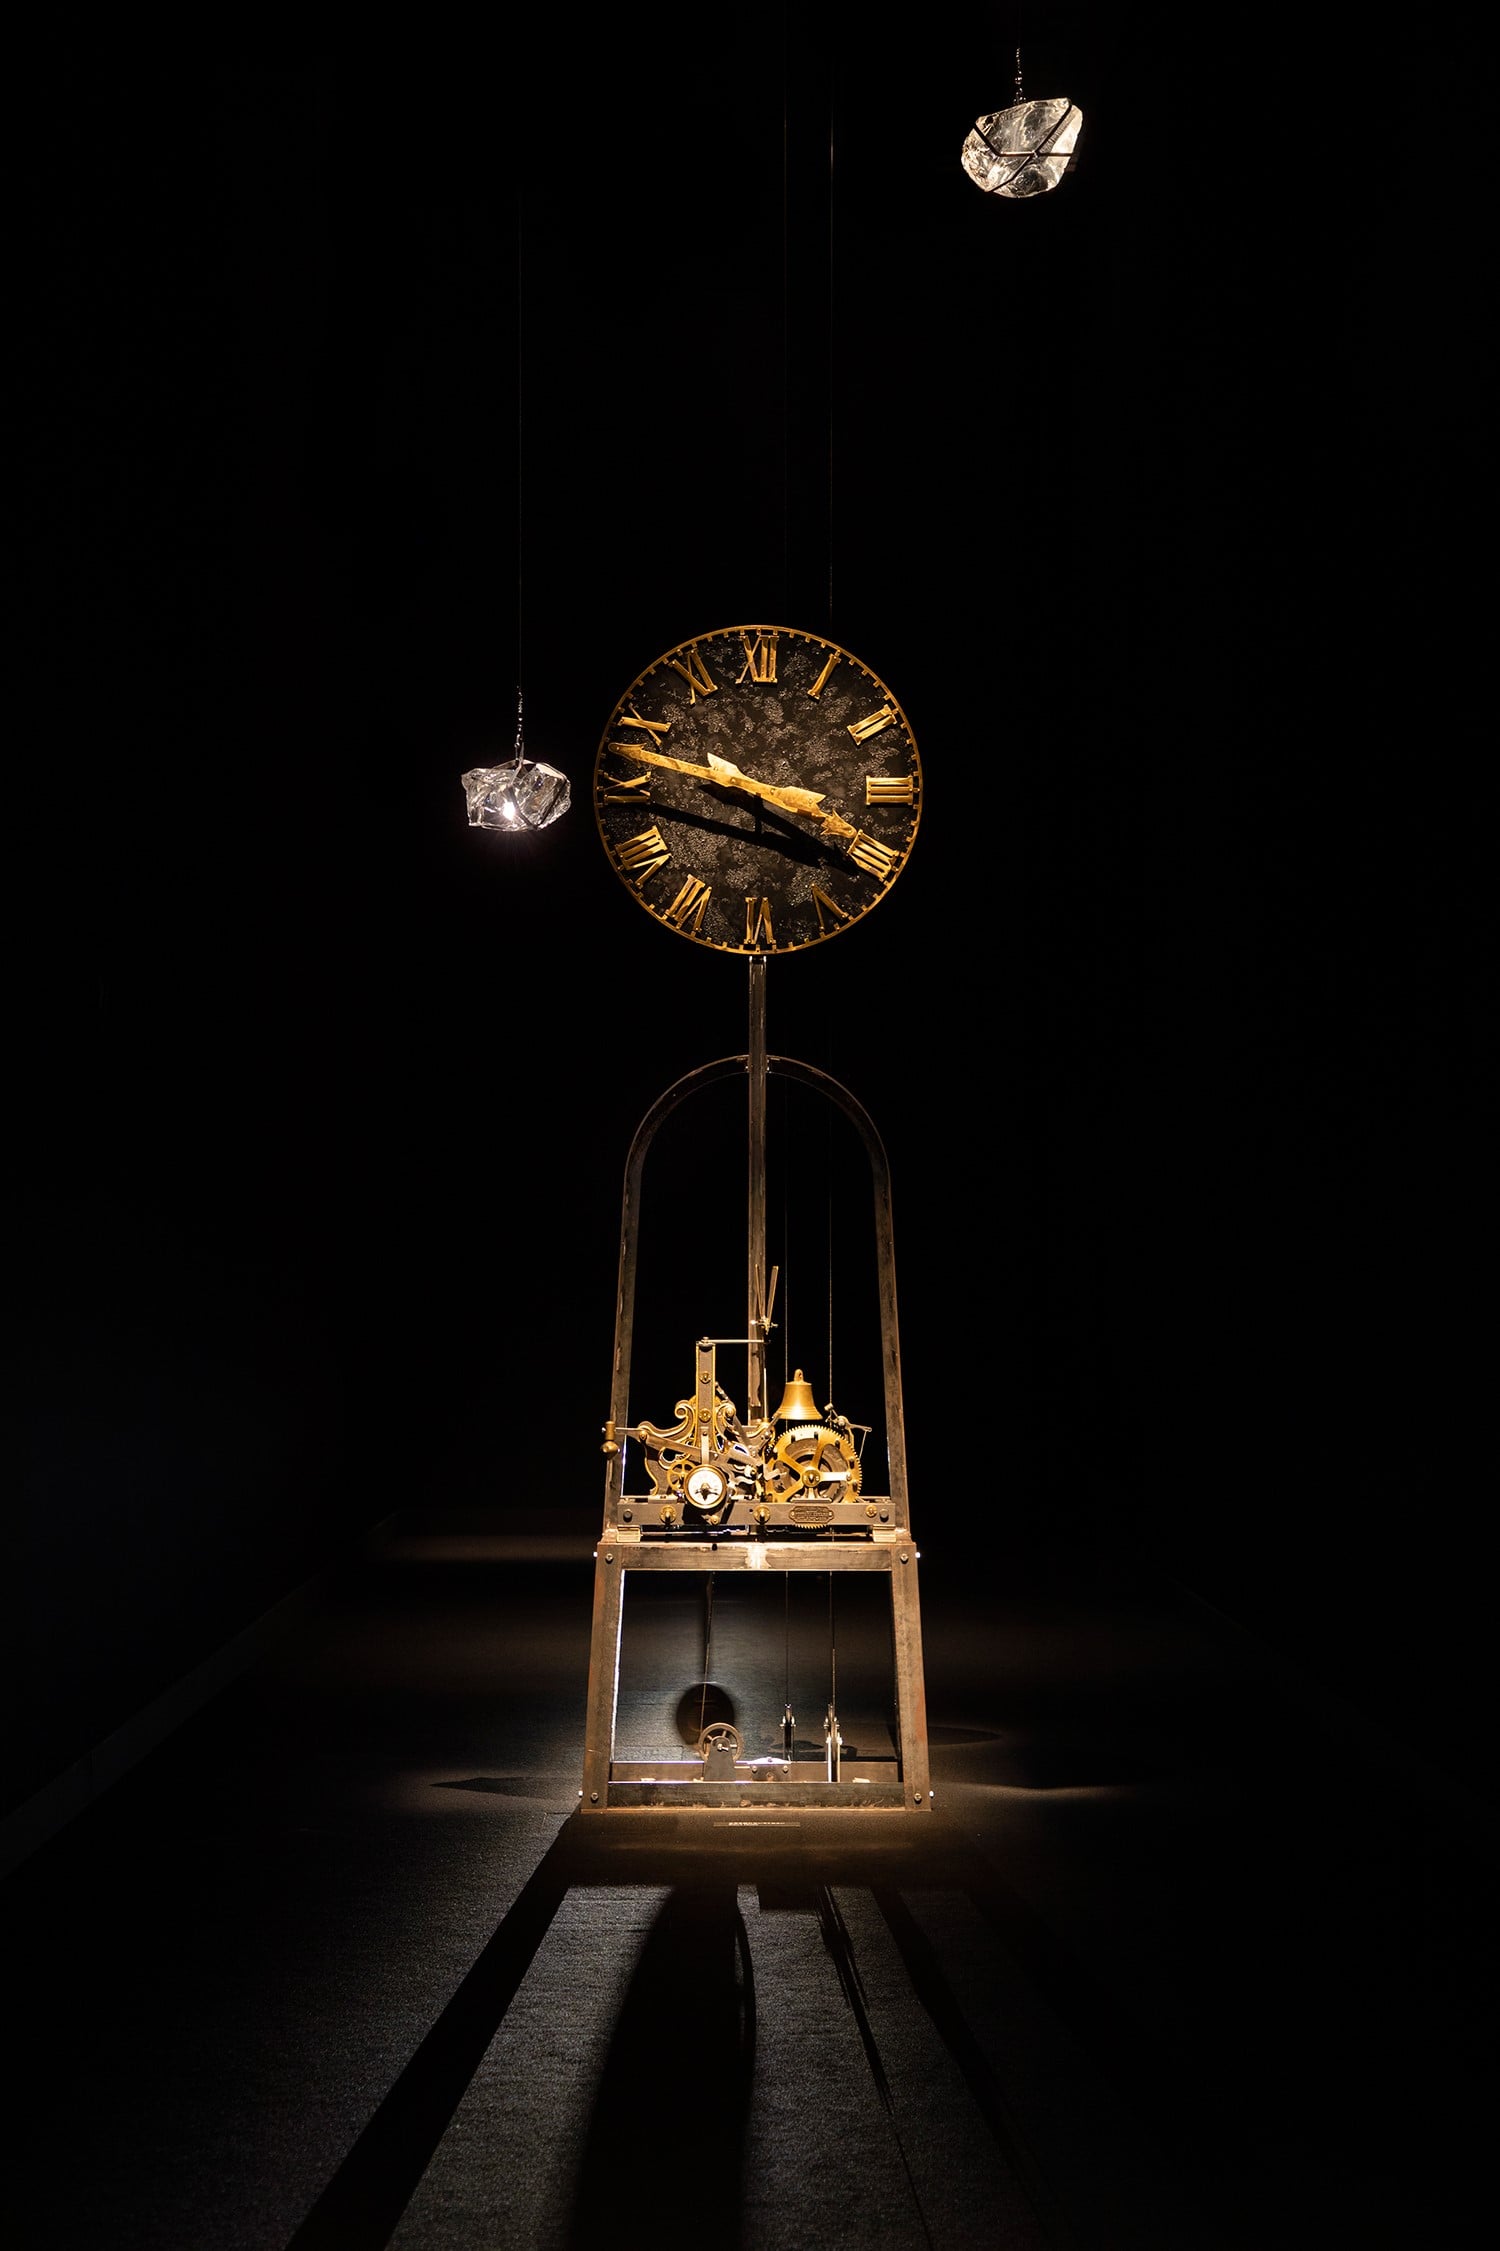 会場は入ると目の前に現れるのは、杉本博司の「逆行時計」（2018年）。 Backward Clock, Hiroshi Sugimoto, 2018 [Made in Milan] © Hiroshi Sugimoto/Courtesy of N.M.R.L.